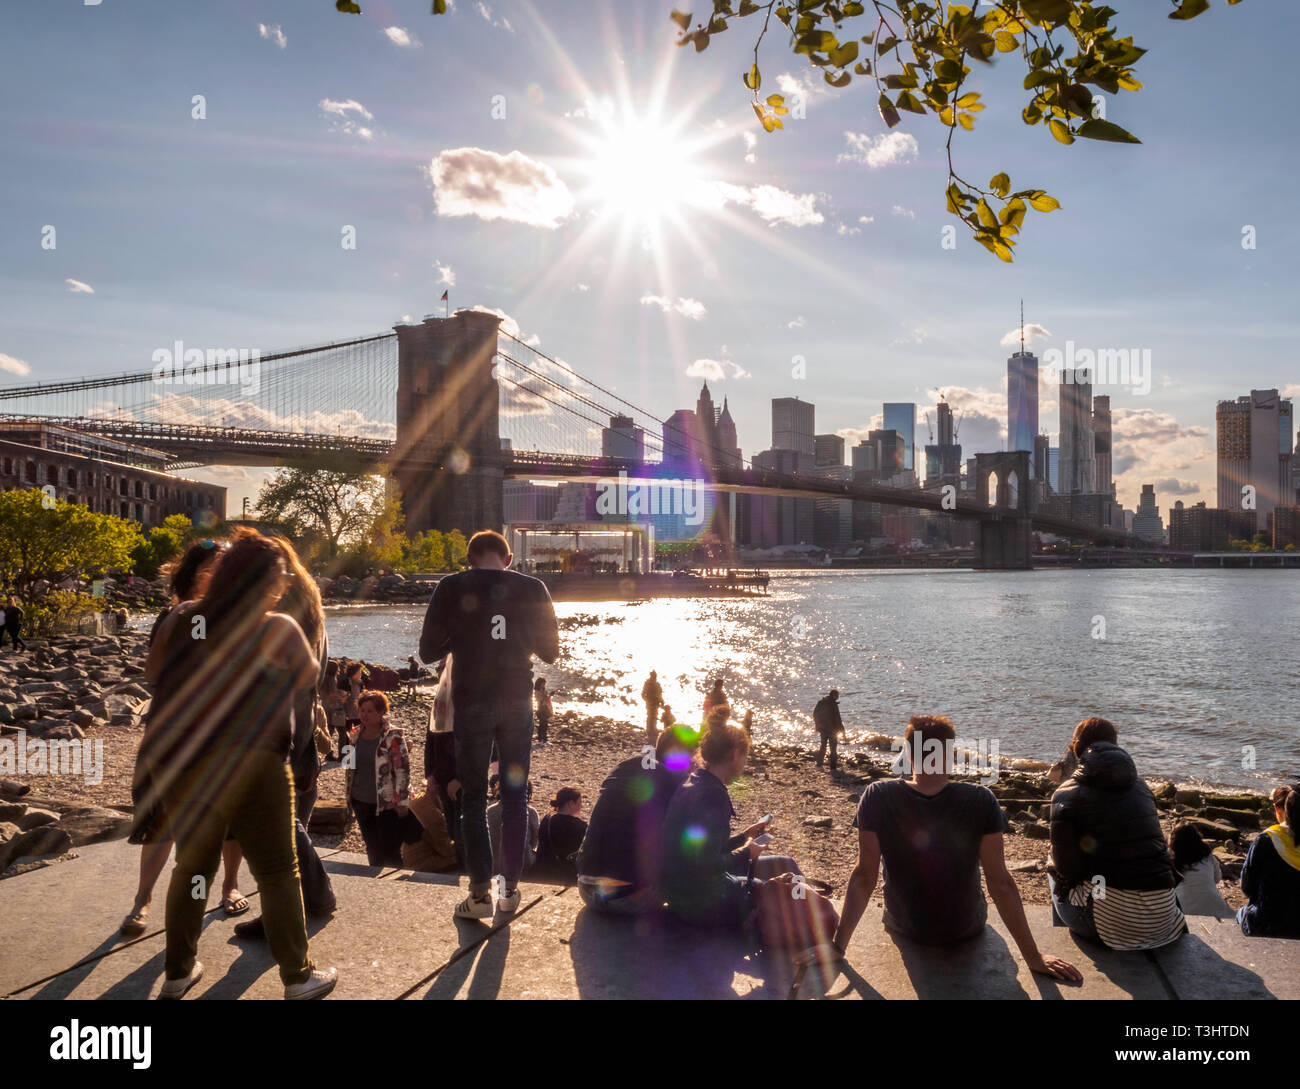 Turisti e locali simili relax su una pigra giornata di sole mentre guardando il ponte di Brooklyn e new york skyline della città Foto Stock